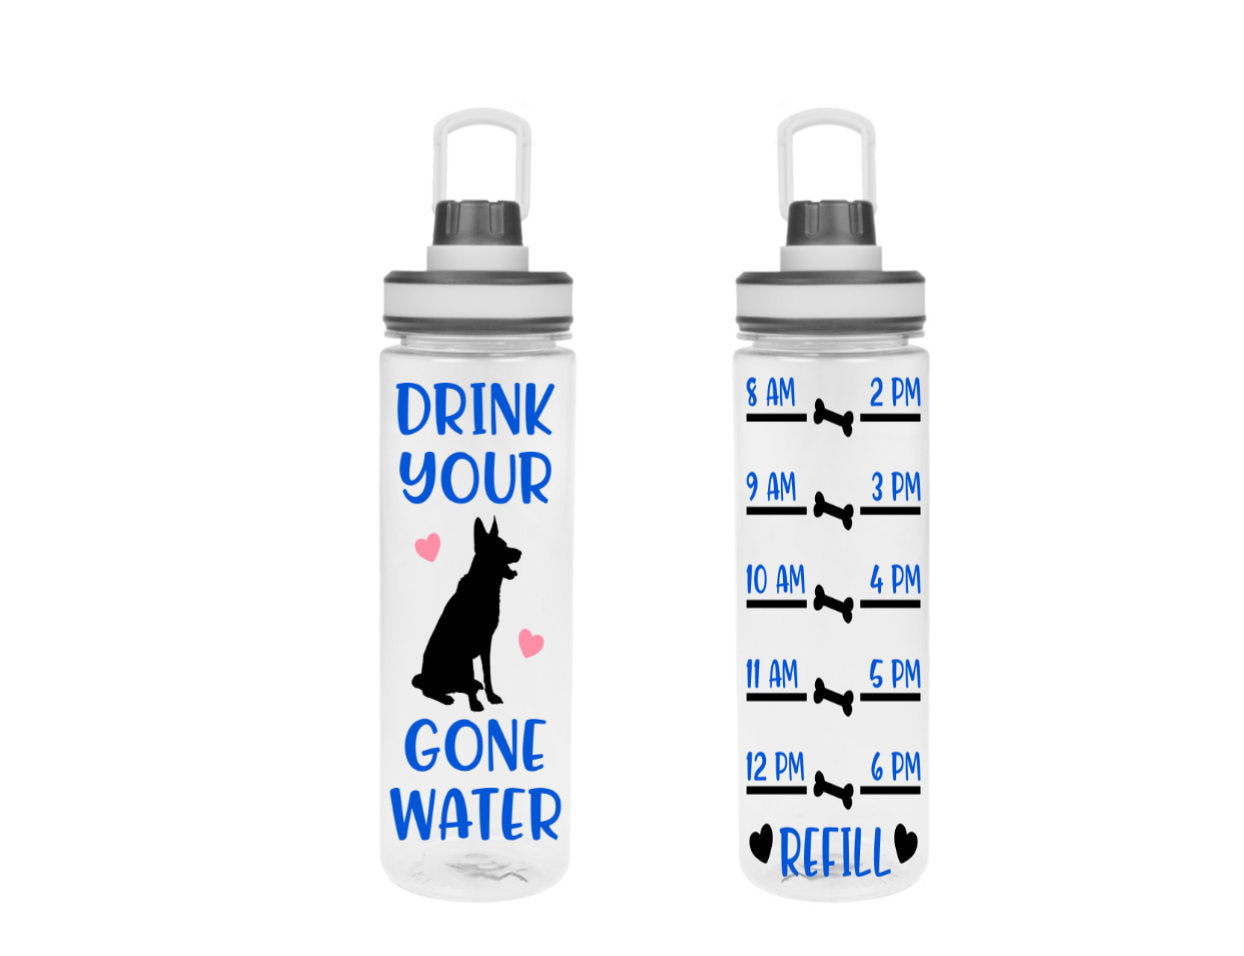 20 oz. Water Bottle - Logo My Mug